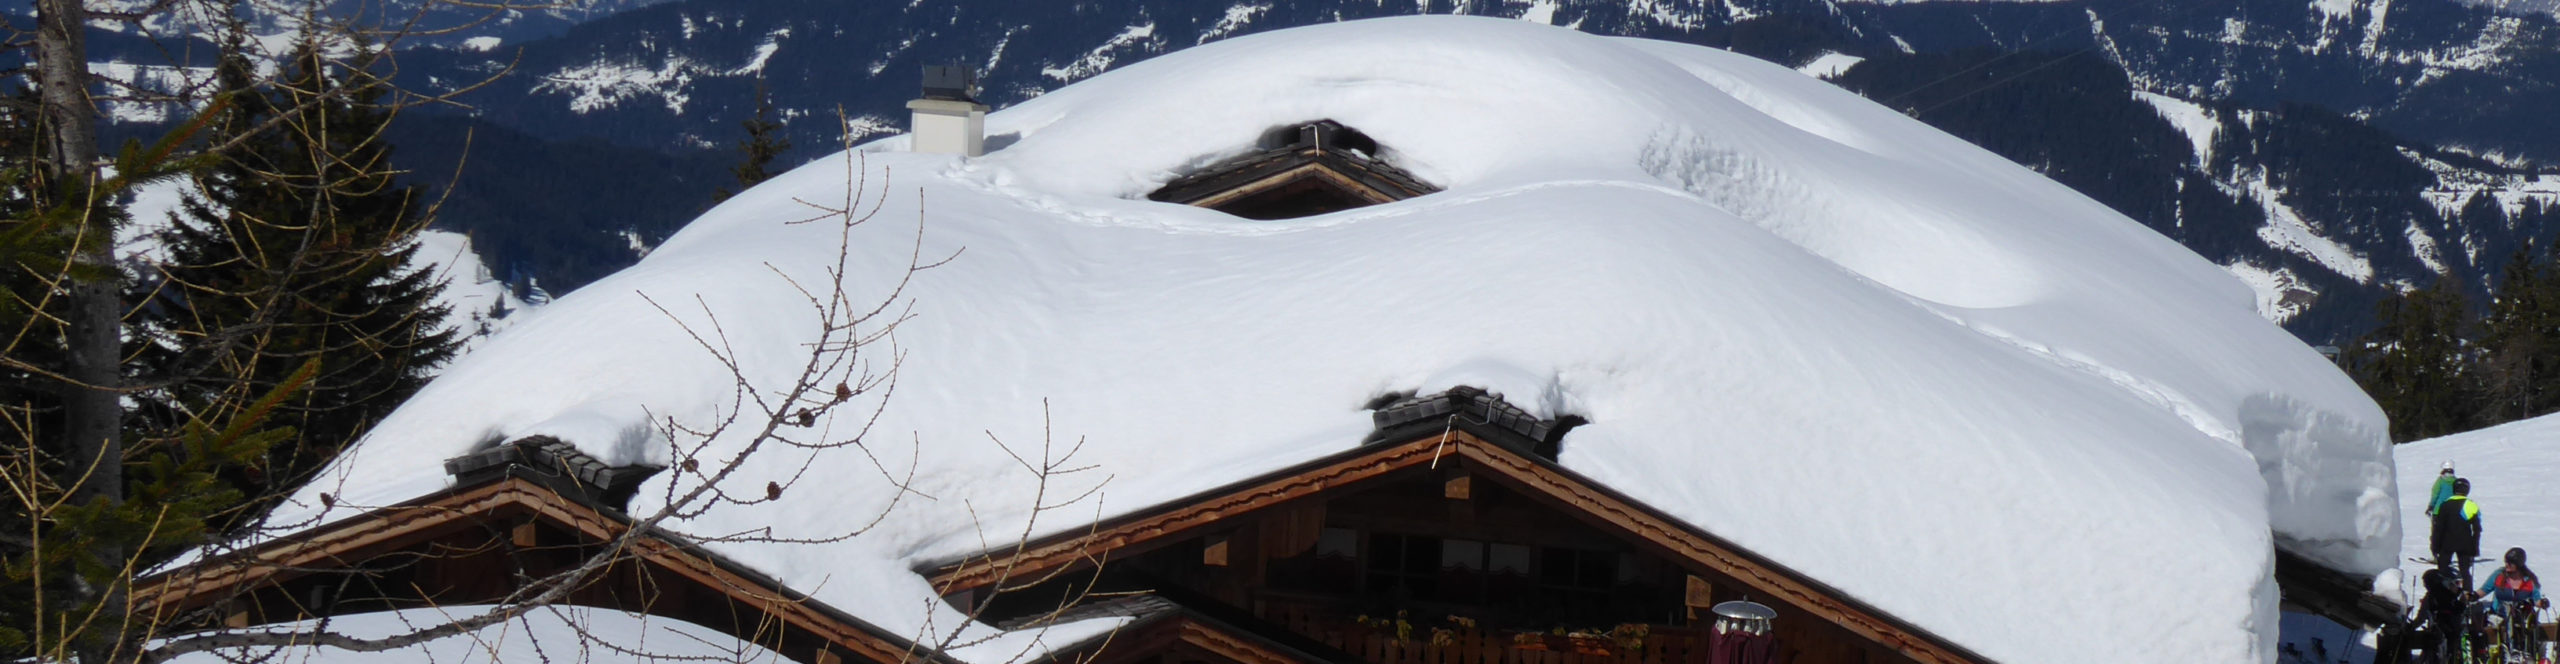 SKIWELT WILDER KAISER – SCHEFFAU – Skiwochenende in eines der größten Skigebiete Österreichs 